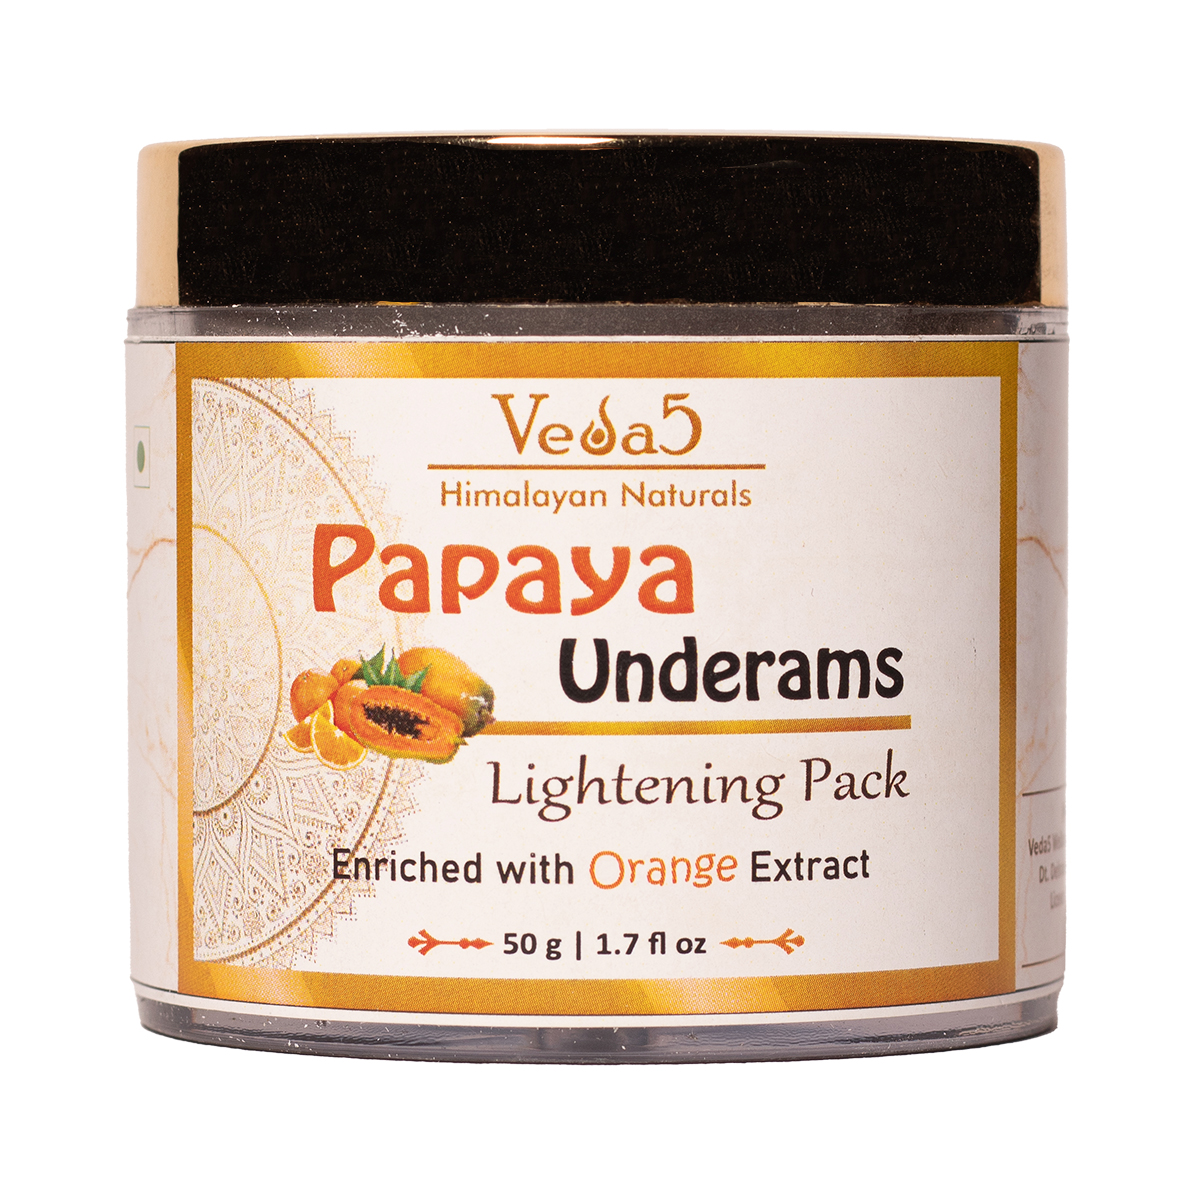 Papaya Underarms Lightening Pack Veda5 Himalayan Naturals 1